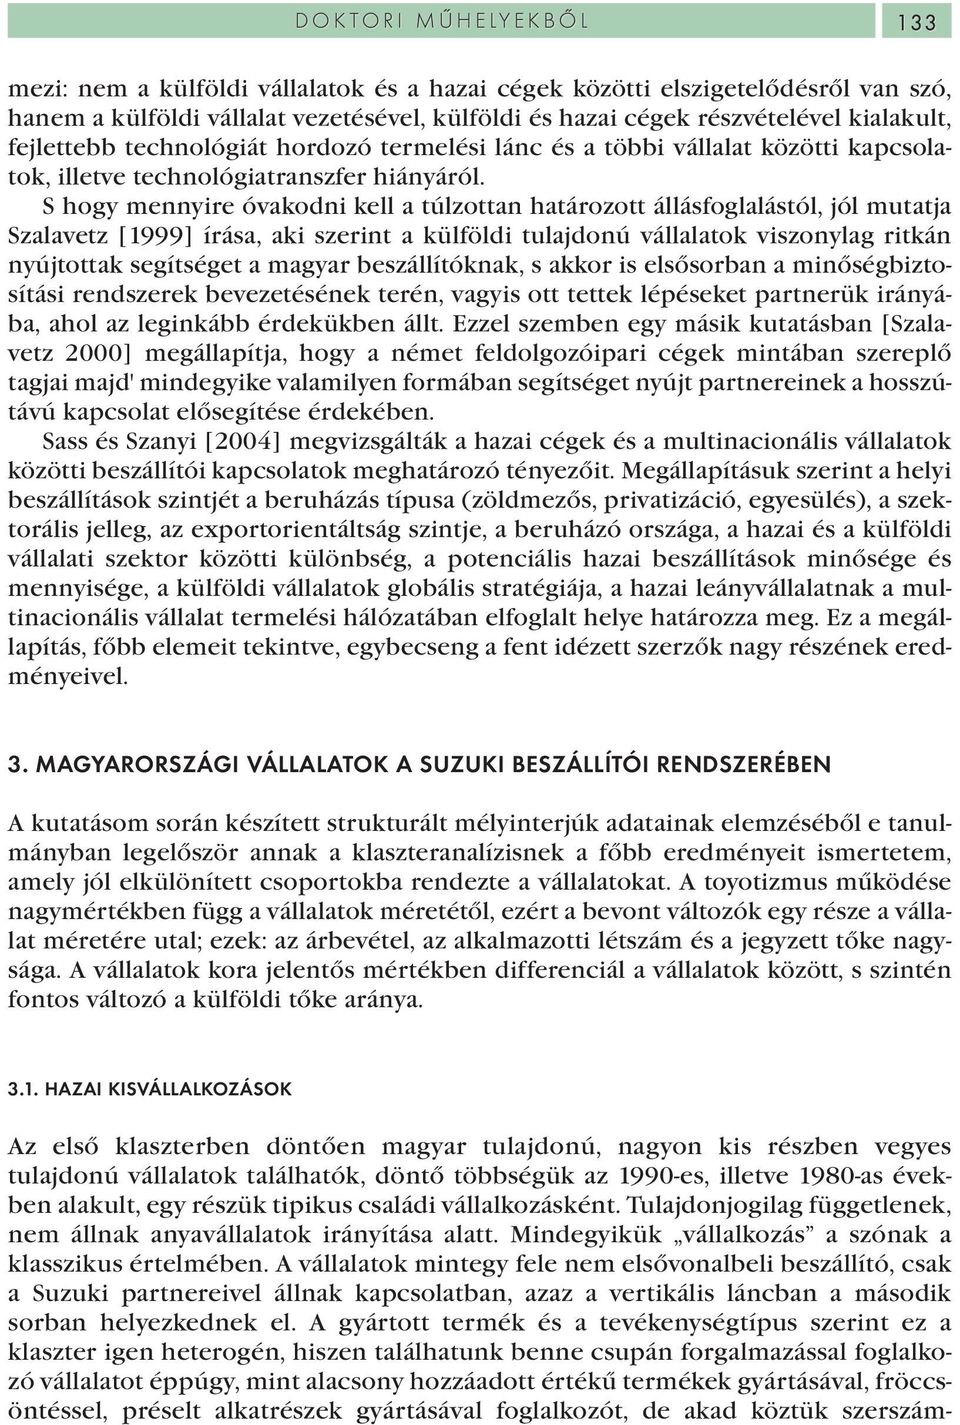 S hogy mennyire óvakodni kell a túlzottan határozott állásfoglalástól, jól mutatja Szalavetz [1999] írása, aki szerint a külföldi tulajdonú vállalatok viszonylag ritkán nyújtottak segítséget a magyar